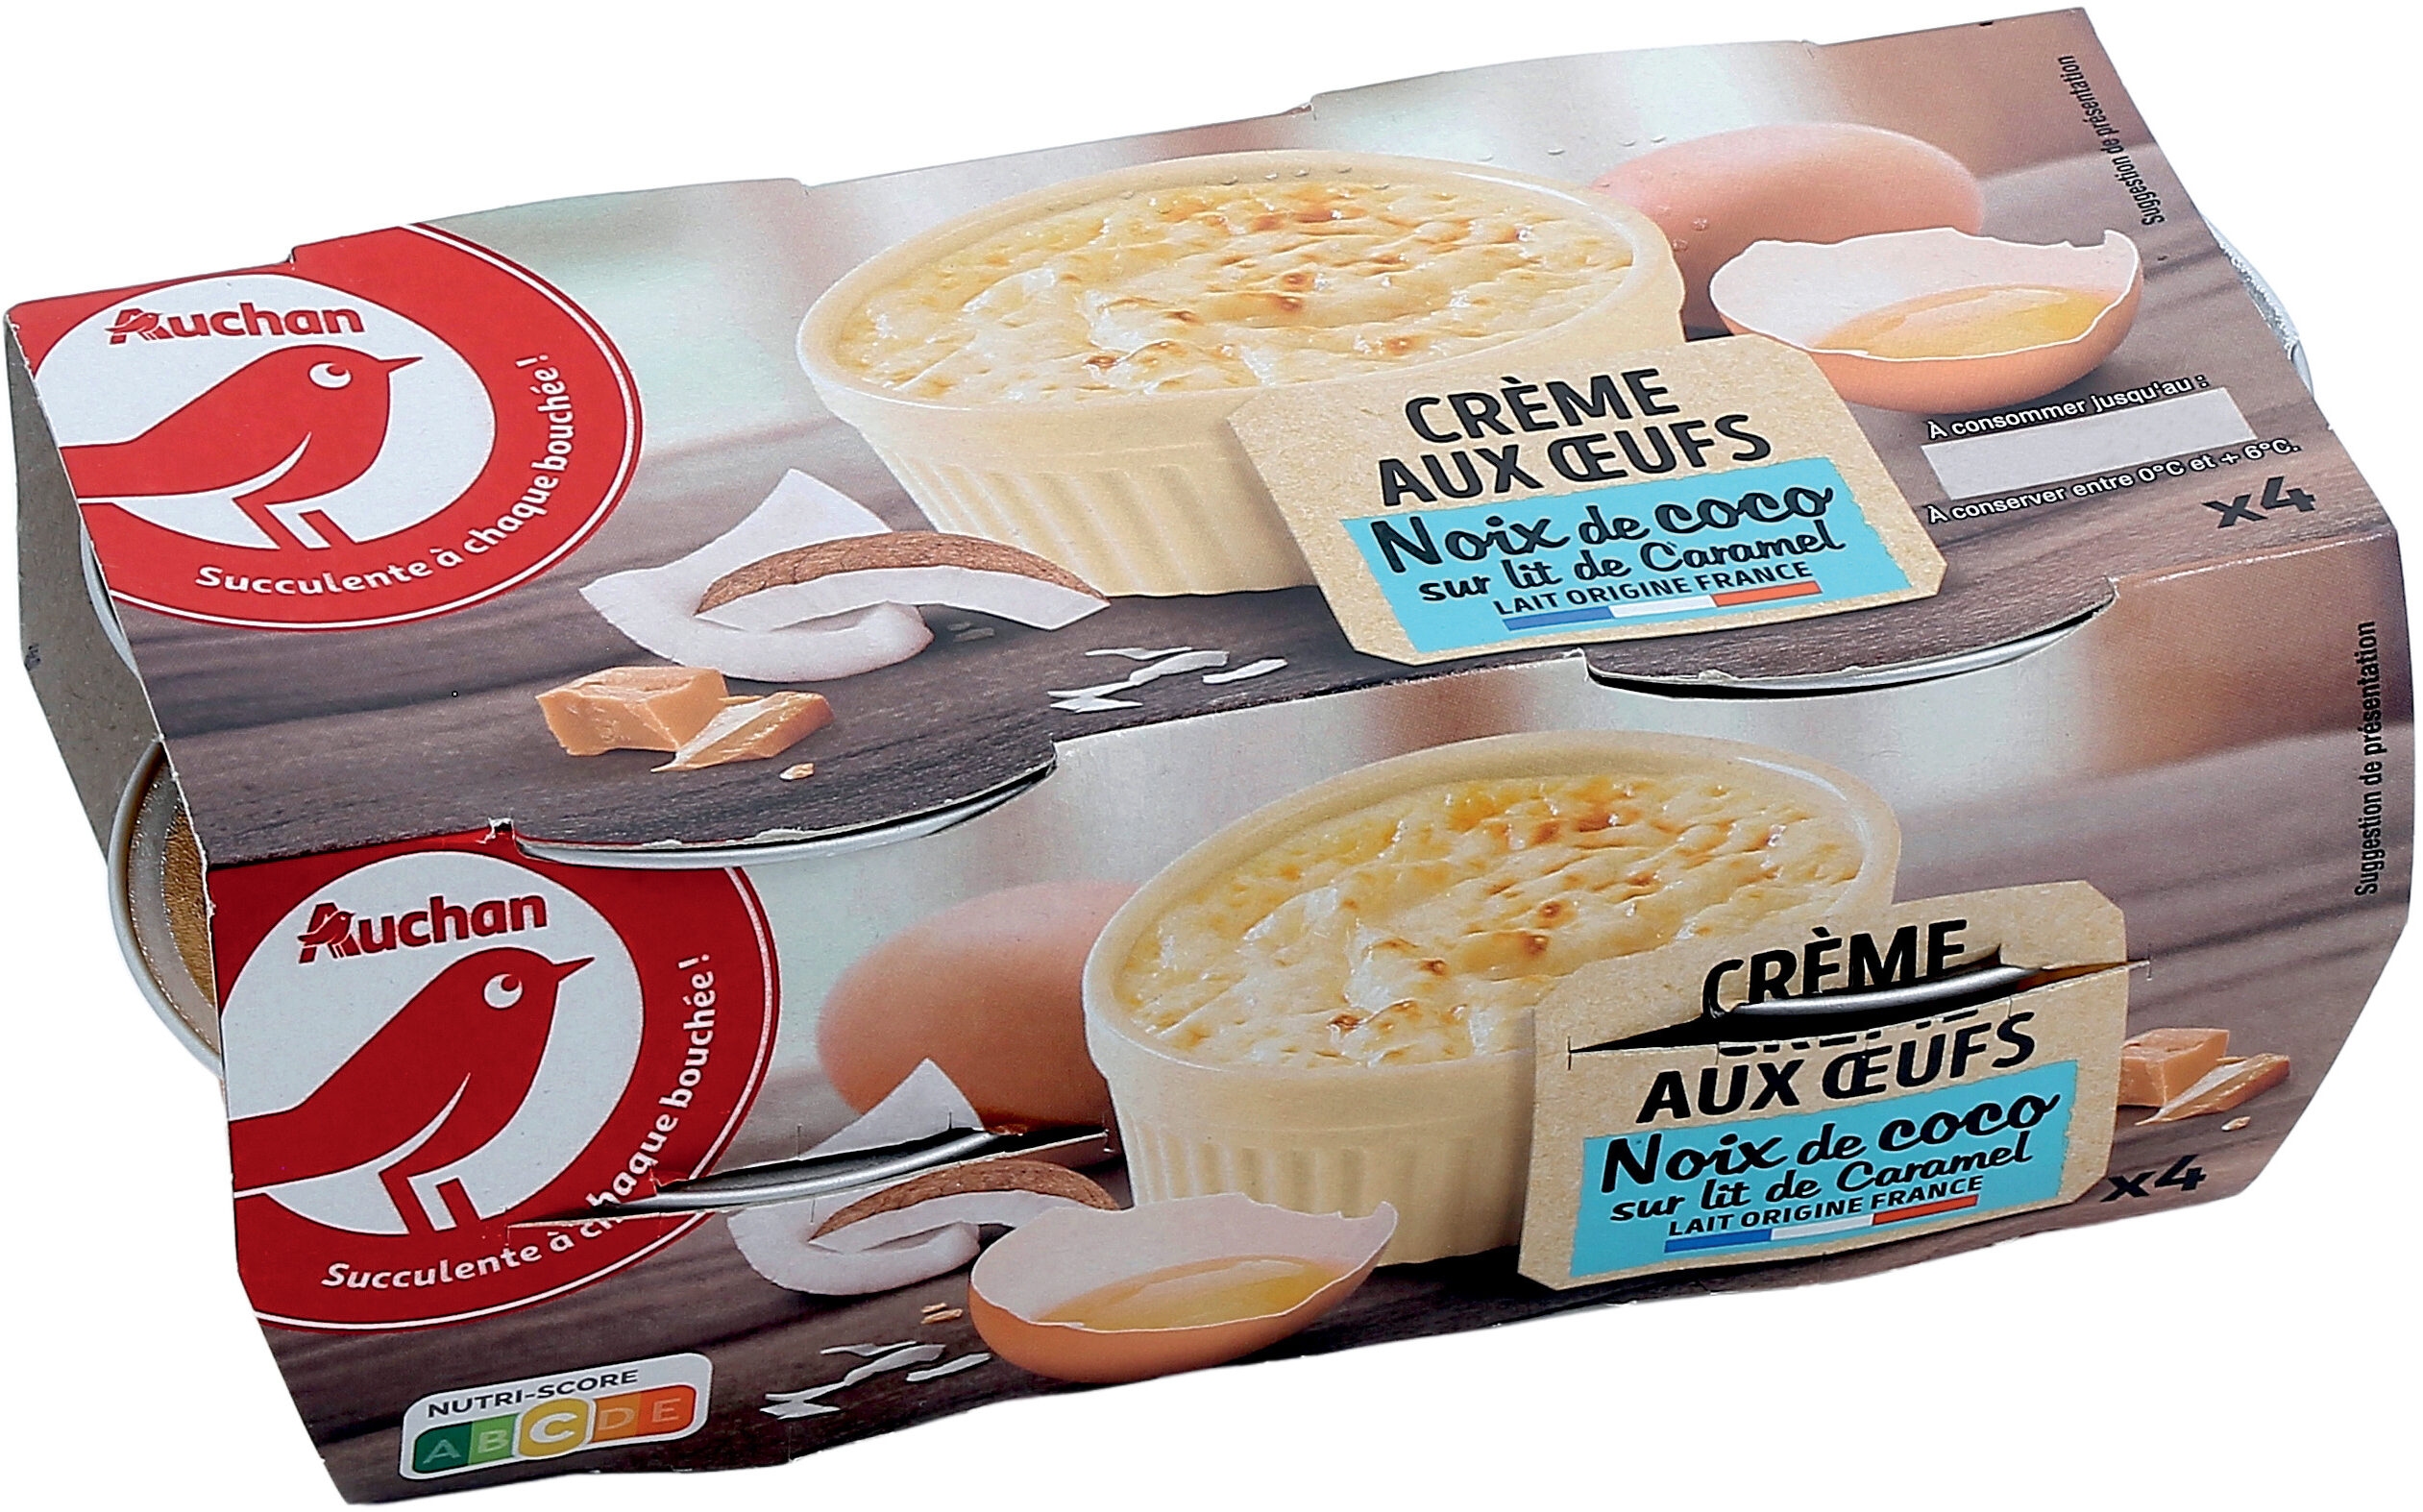 Crème aux œufs - Noix de coco- Sur lit de caramel - Product - fr